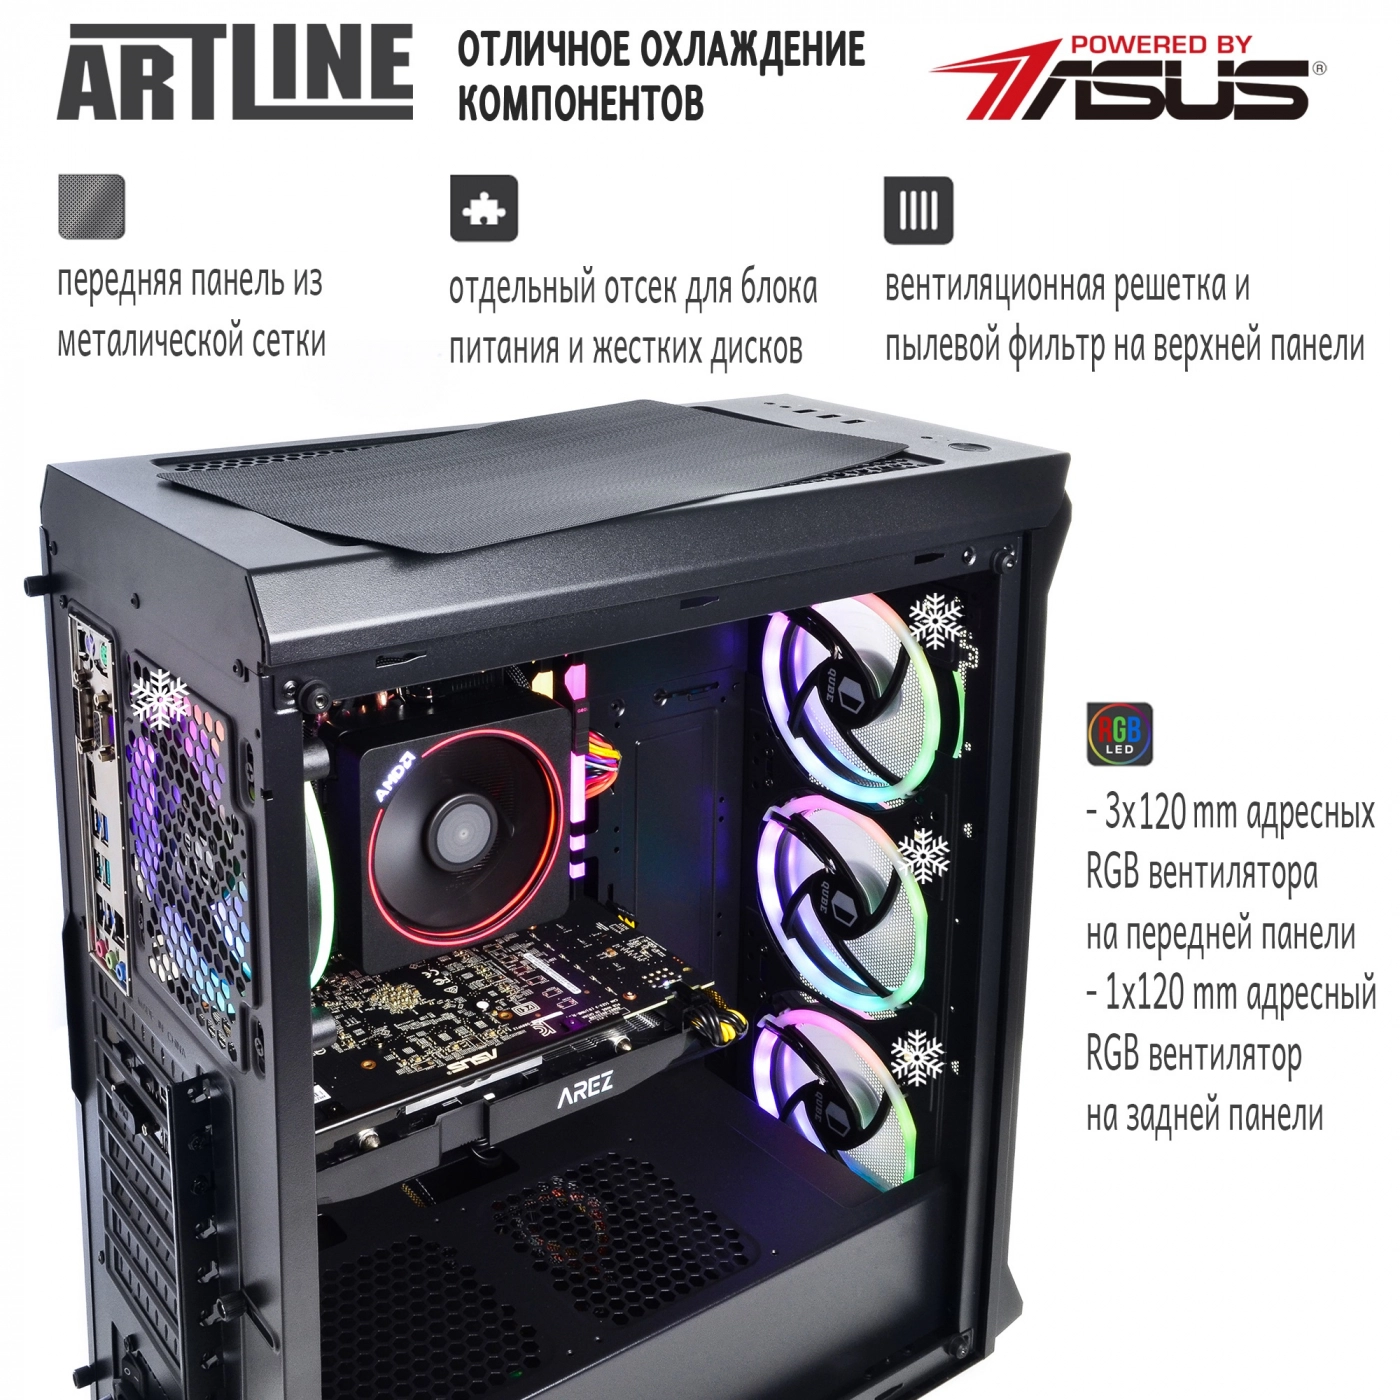 Купить Компьютер ARTLINE Gaming X87v14 - фото 2